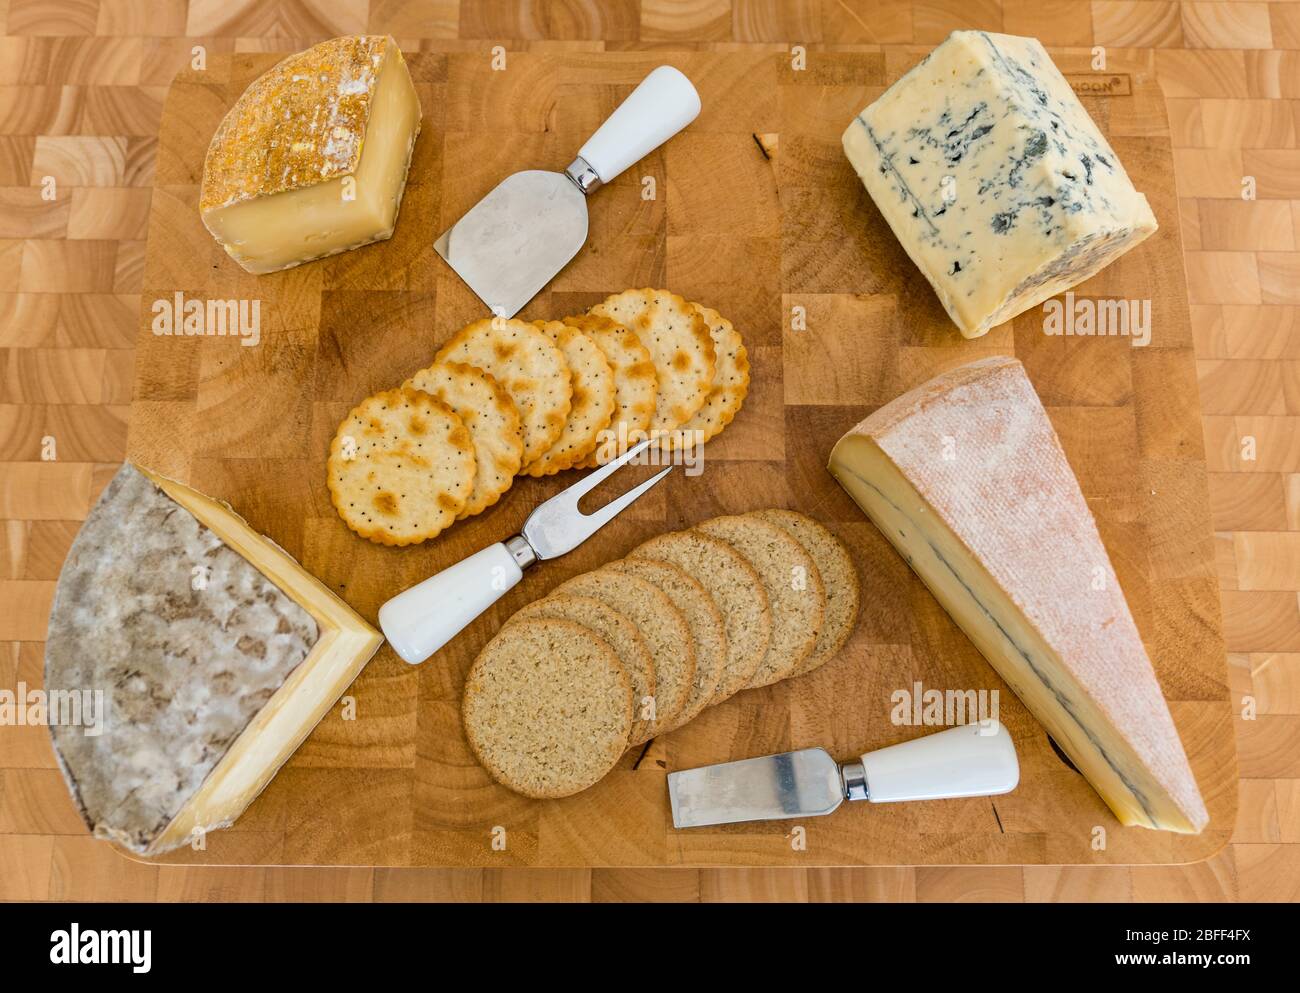 Käseplatte: Handwerkliche Käsesorten Gorwydd Caerphilly (Wales), Sheep Rustler (Somerset), Cashel Blue Cheese (Irland) & Morbier (Frankreich) Cracker & Haferkuchen Stockfoto